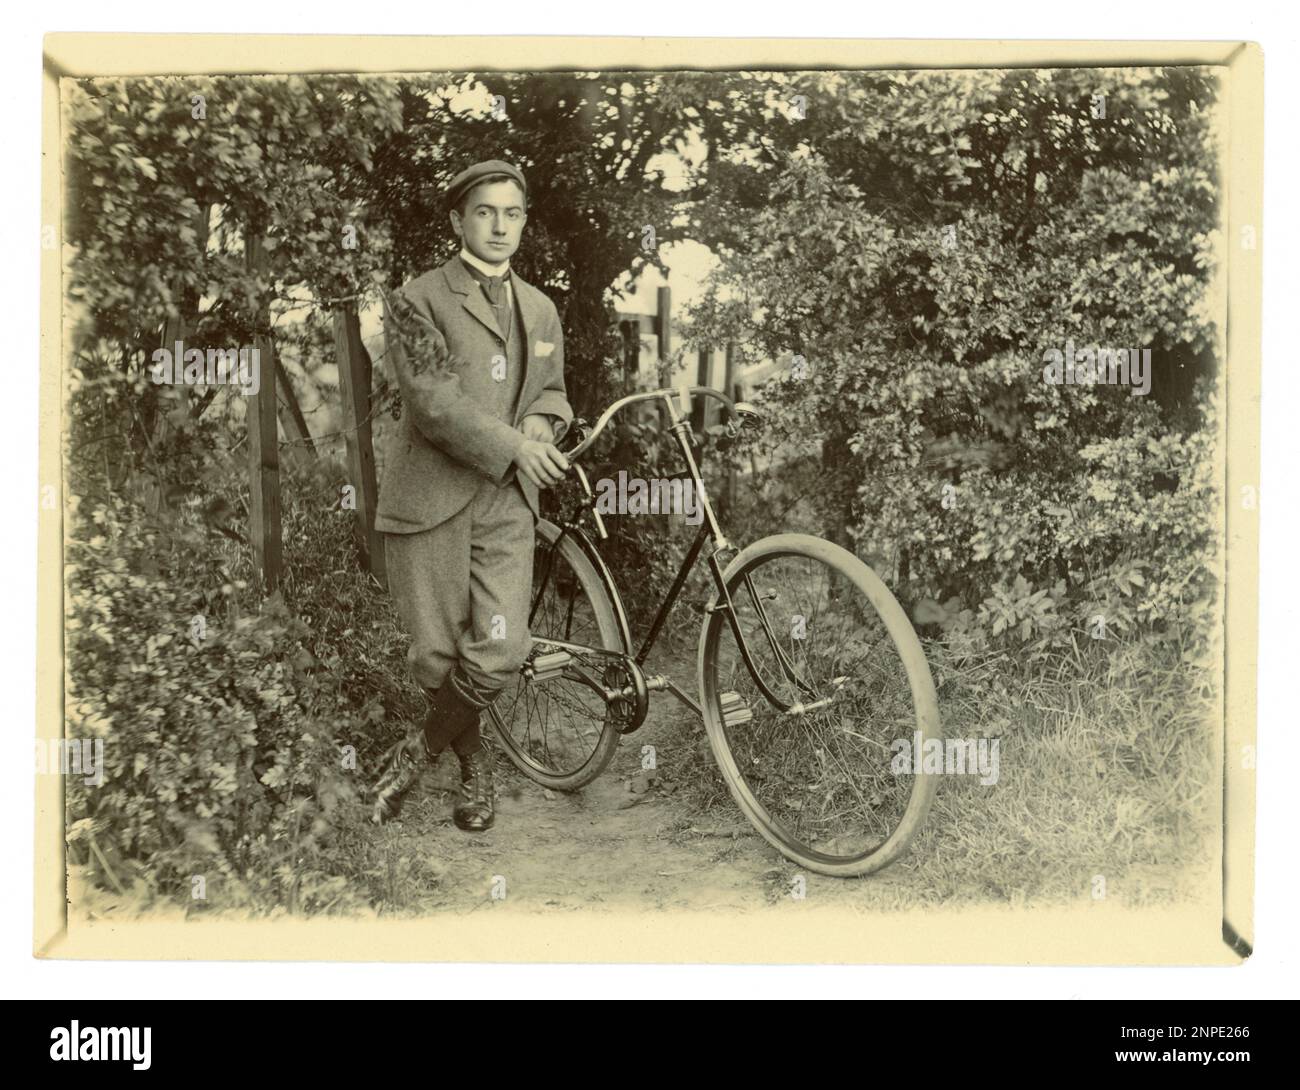 Photographie victorienne originale d'un jeune cycliste victorien avec son vélo dans un jardin, cyclisme vintage, vers 1898, Royaume-Uni Banque D'Images